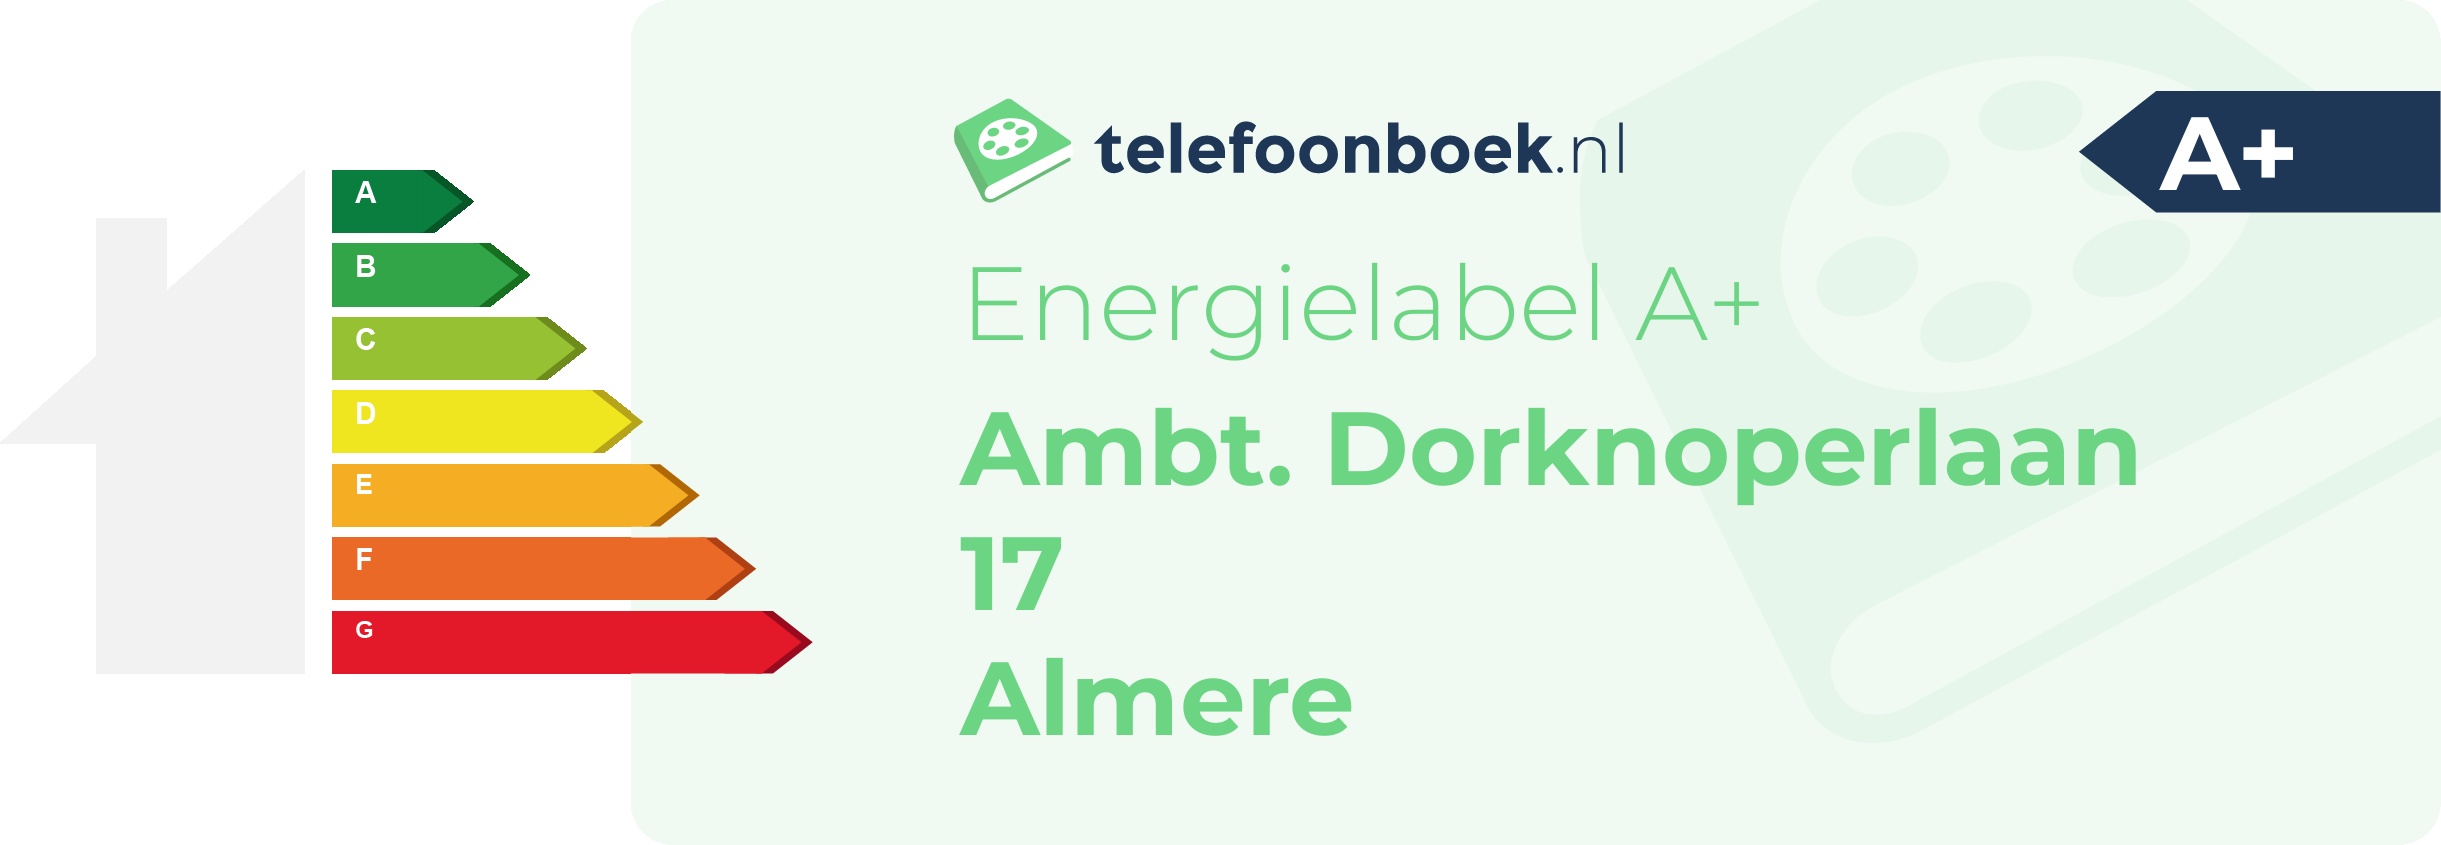 Energielabel Ambt. Dorknoperlaan 17 Almere